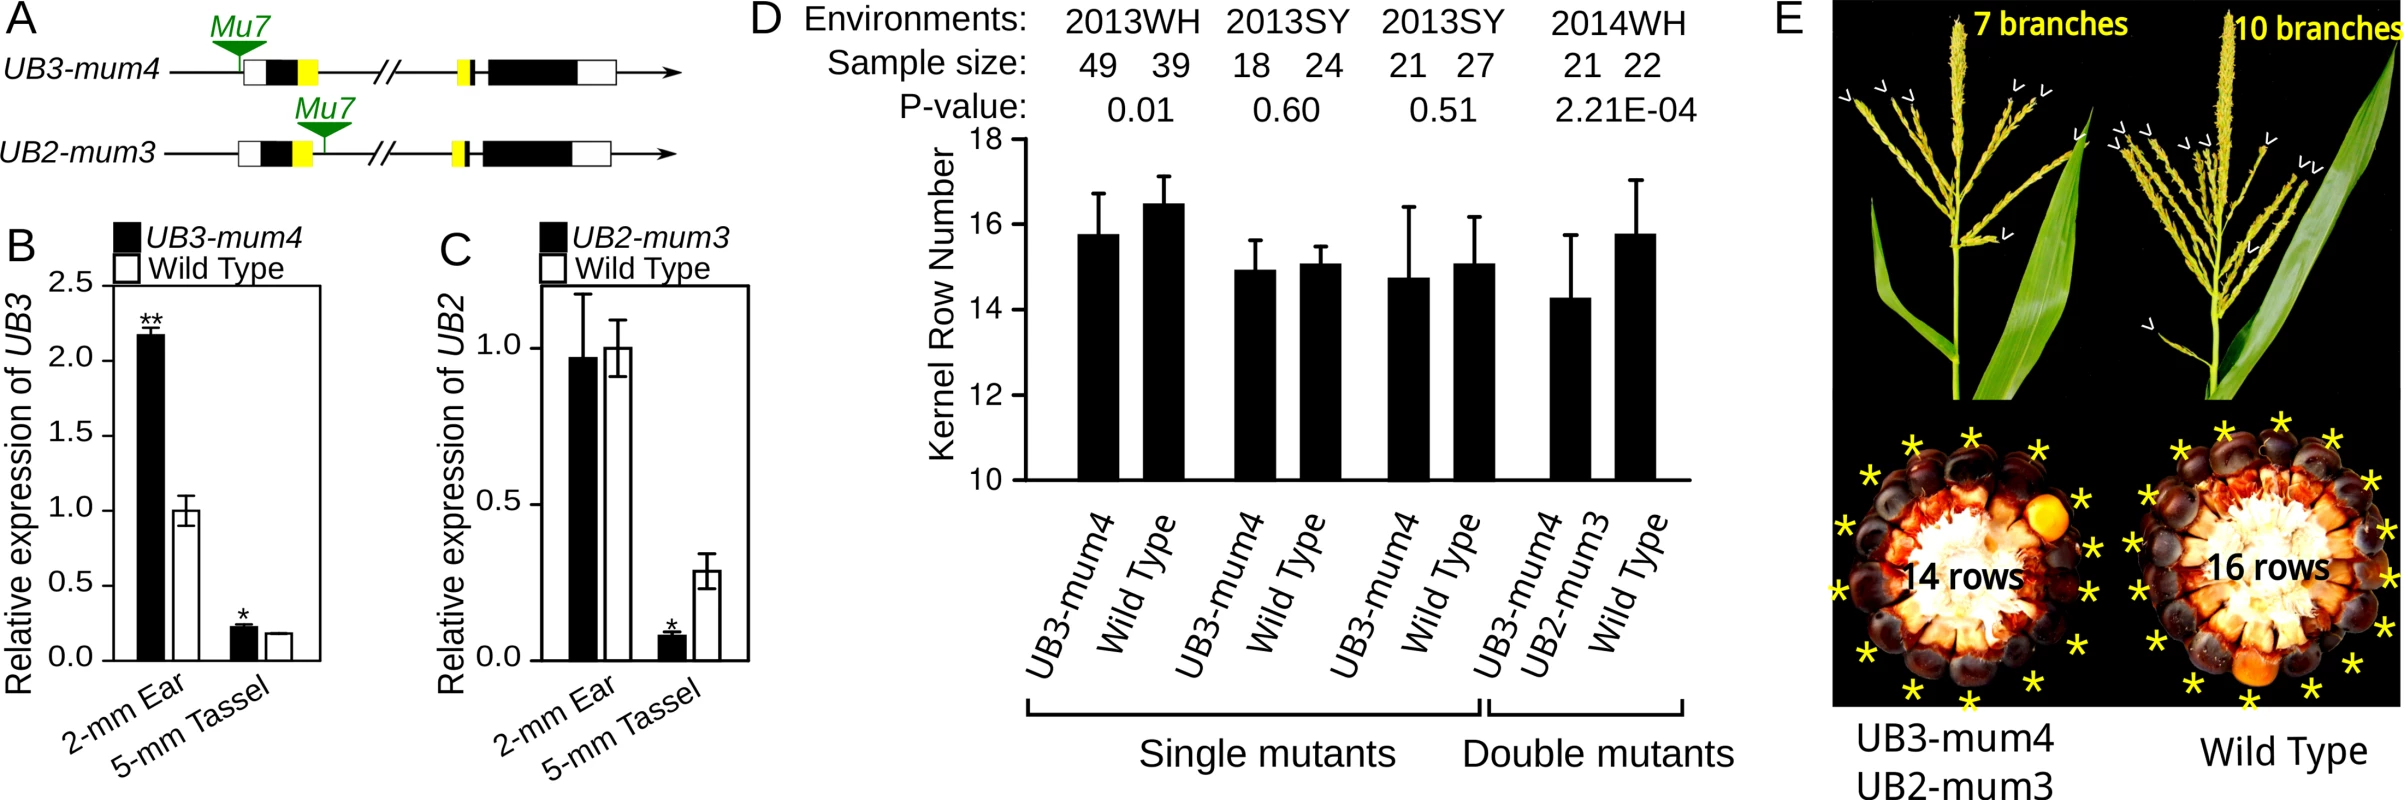 Expression analysis and phenotypic characterization of <i>UB3-mum4</i> and <i>UB2-mum3</i> mutants.